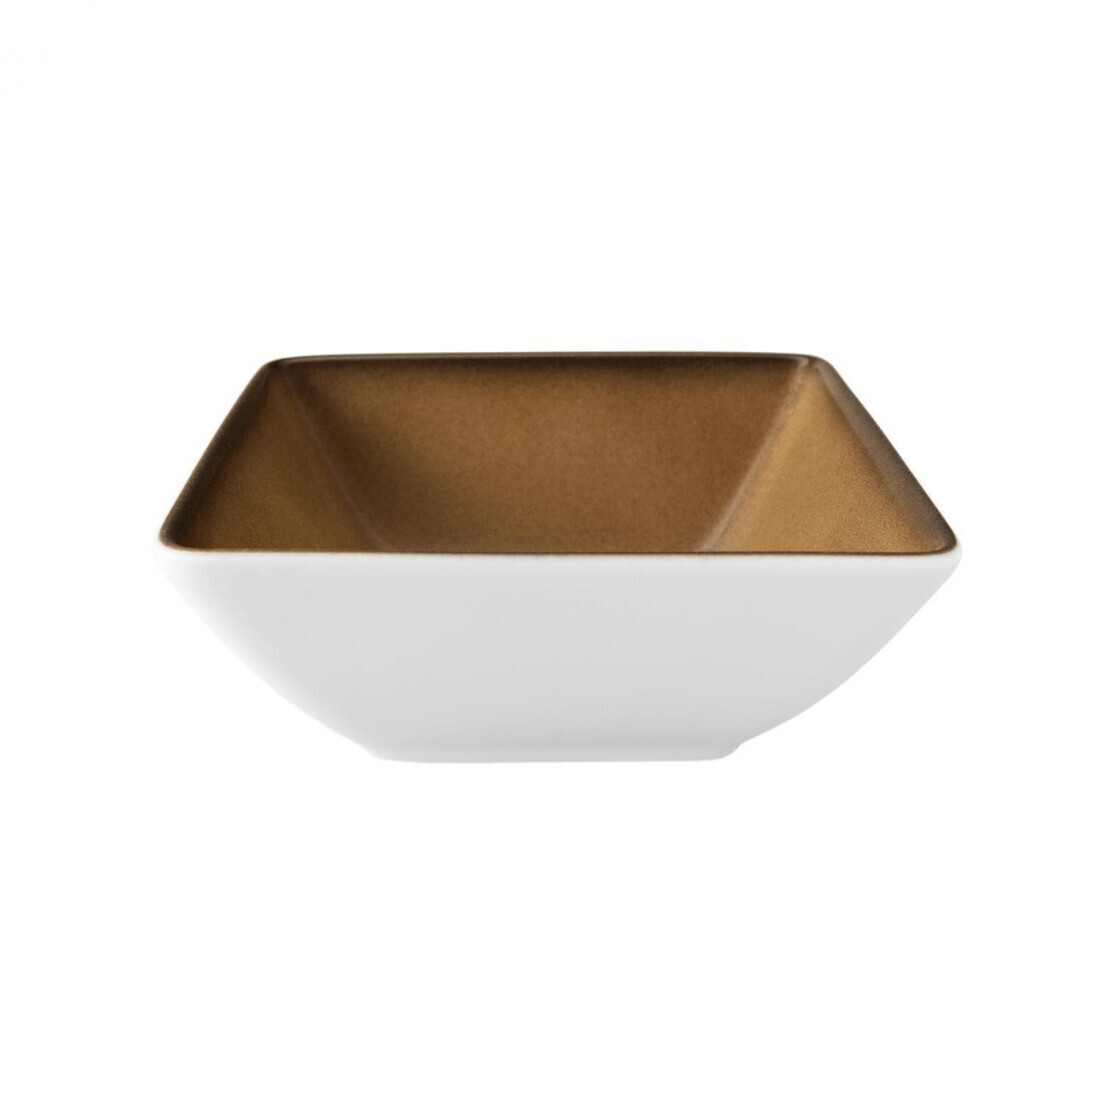 Seltmann - Buffet gourmet - Bowl 5140 26x26 cm Caramel